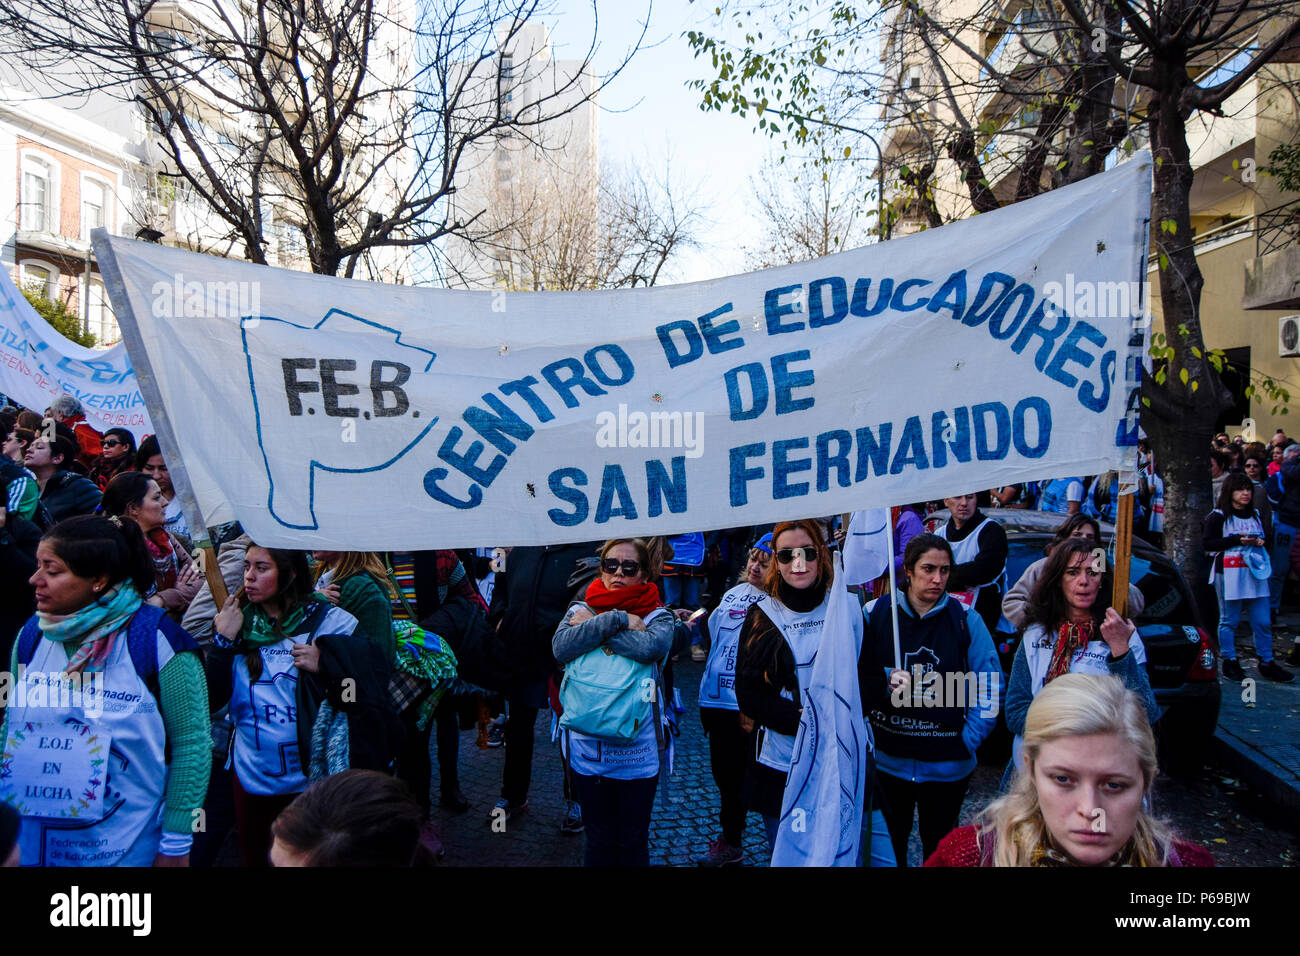 Ein Banner sagen, Zentrum für Erzieher von San Fernando. Union der Pädagogen aus der Provinz Buenos Aires Protest an das Ministerium für Bildung in La Plata für eine Gehaltserhöhung von 30 % und einer Aufhebung in der Resolution 1736, erfordern sie auch eine Generalstreik von allen Pädagogen während des Protestes. Stockfoto